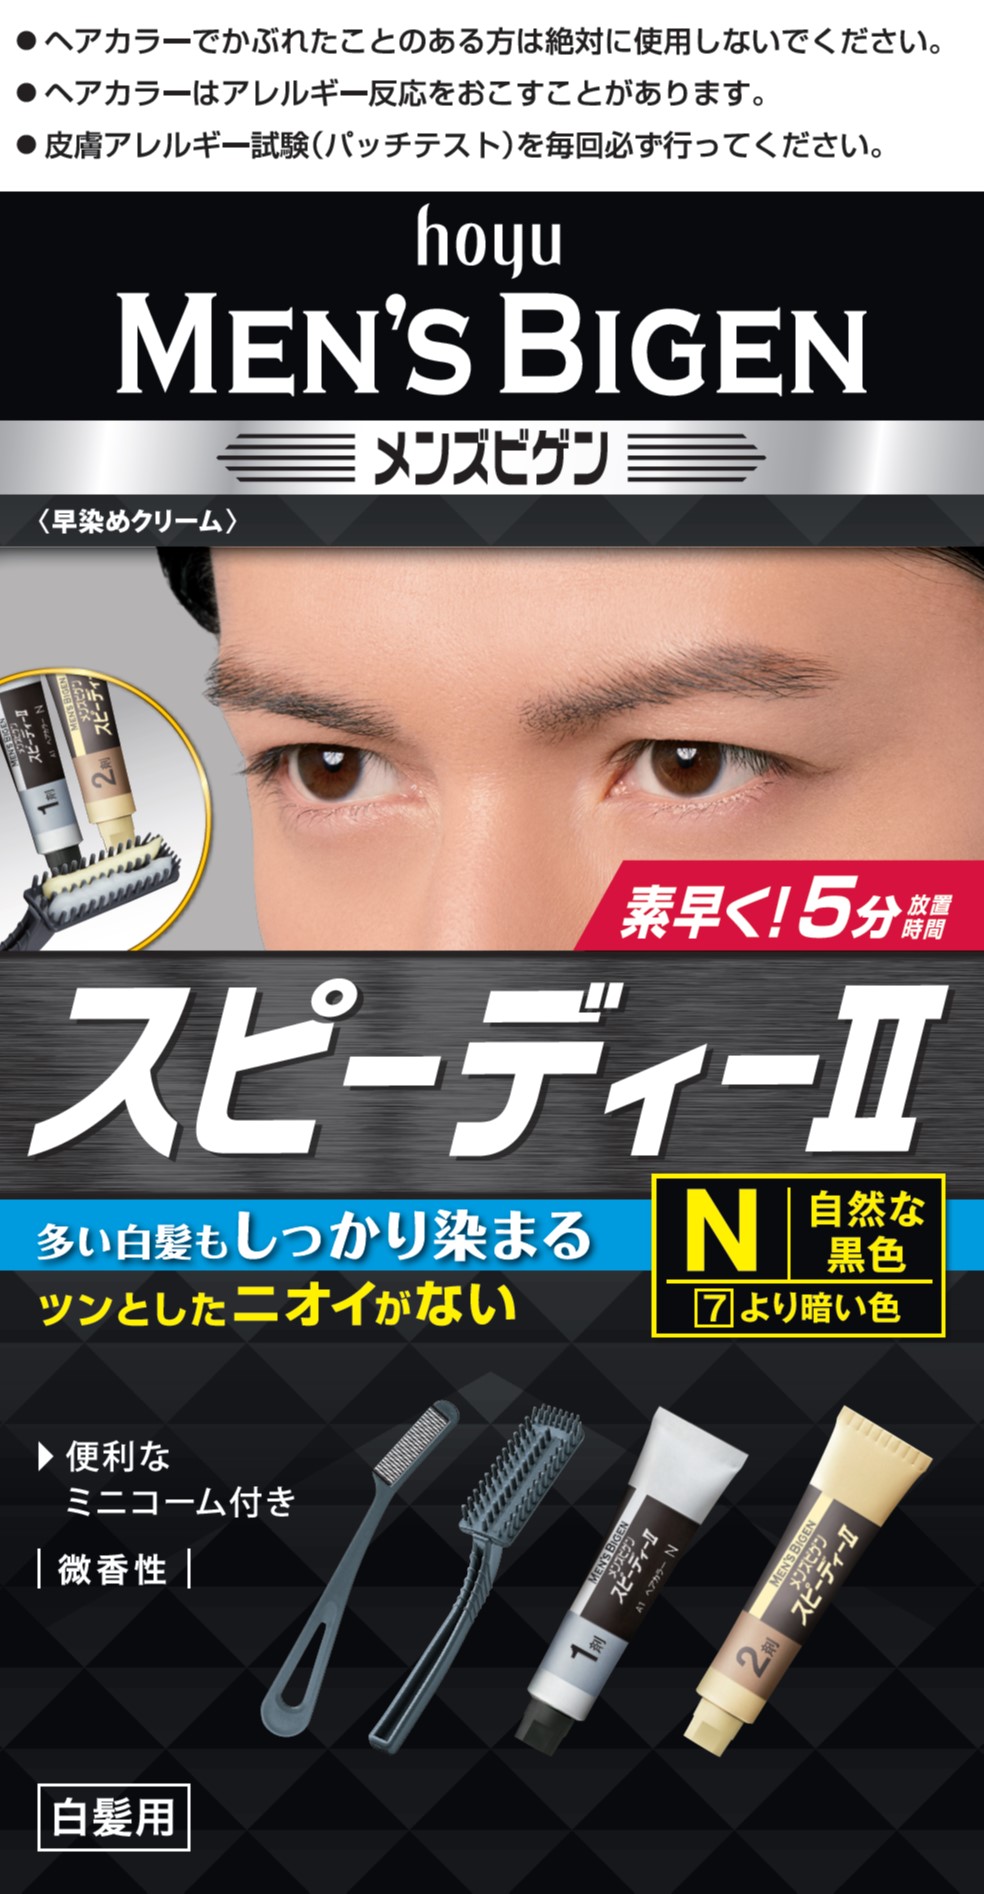 Men's Bigen - Hoyu is NO. 1* for hair color in Japan!